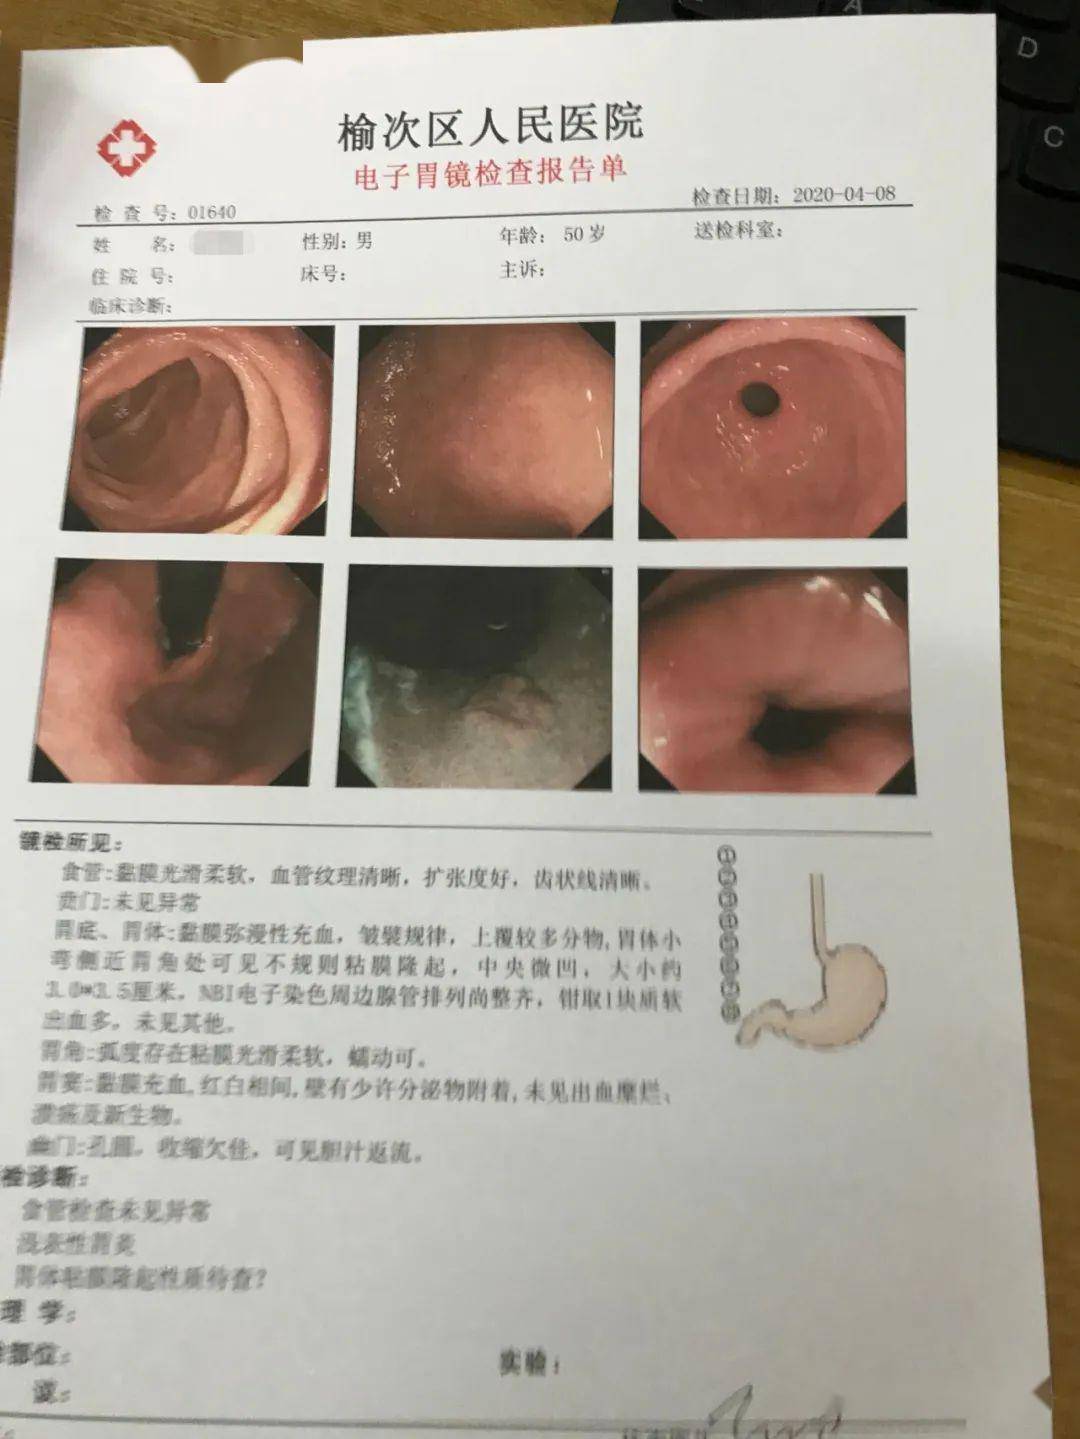 【医院新闻】榆次区人民医院陈星博士工作站开诊 完成首例胃体黏膜下